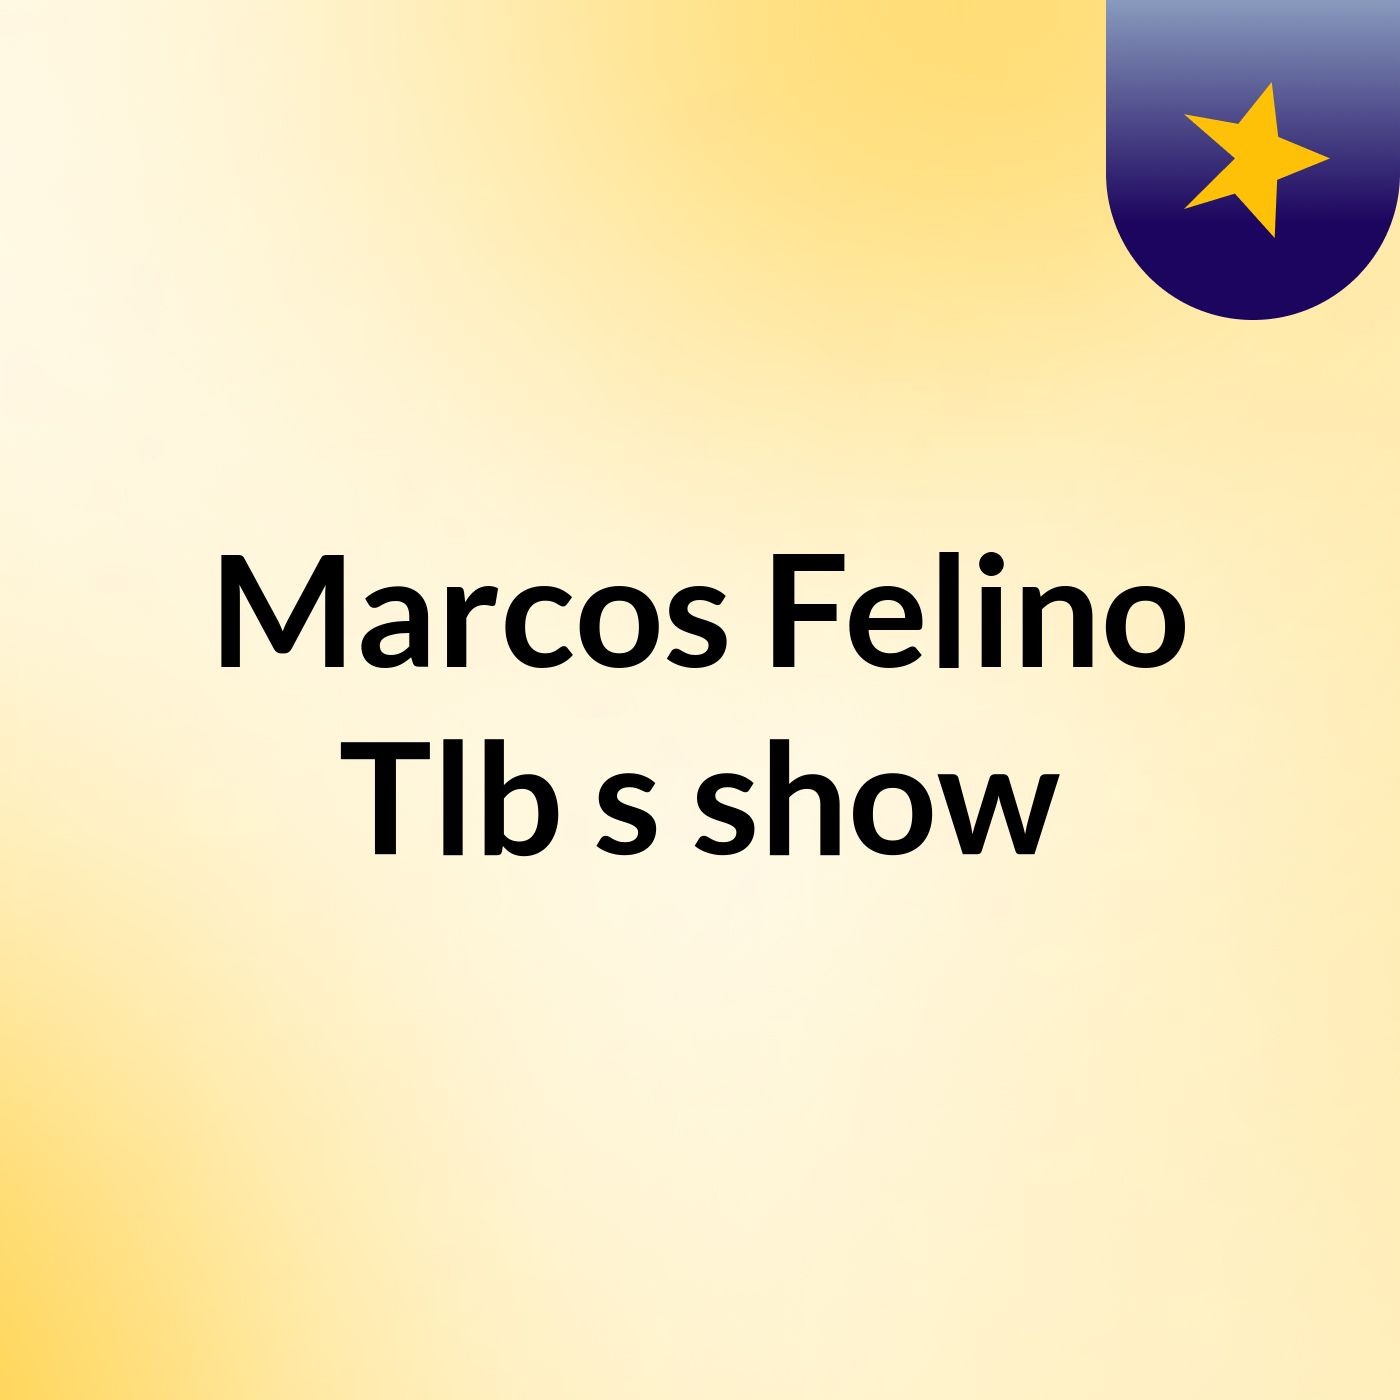 Marcos Felino Tlb's show